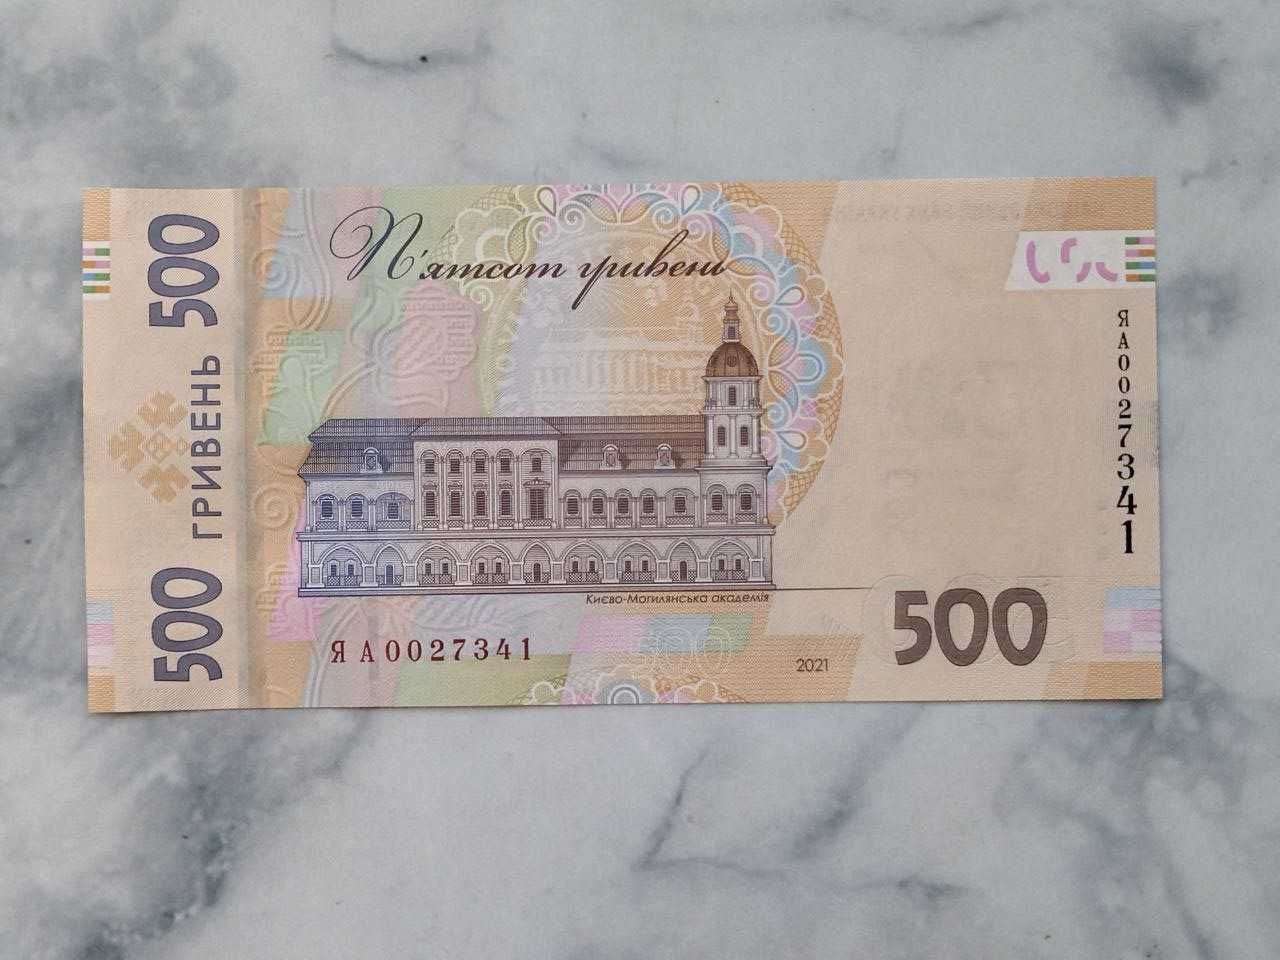 Юбилейная банкнота 500 грн. 2021 года "30 років Незалежності України"